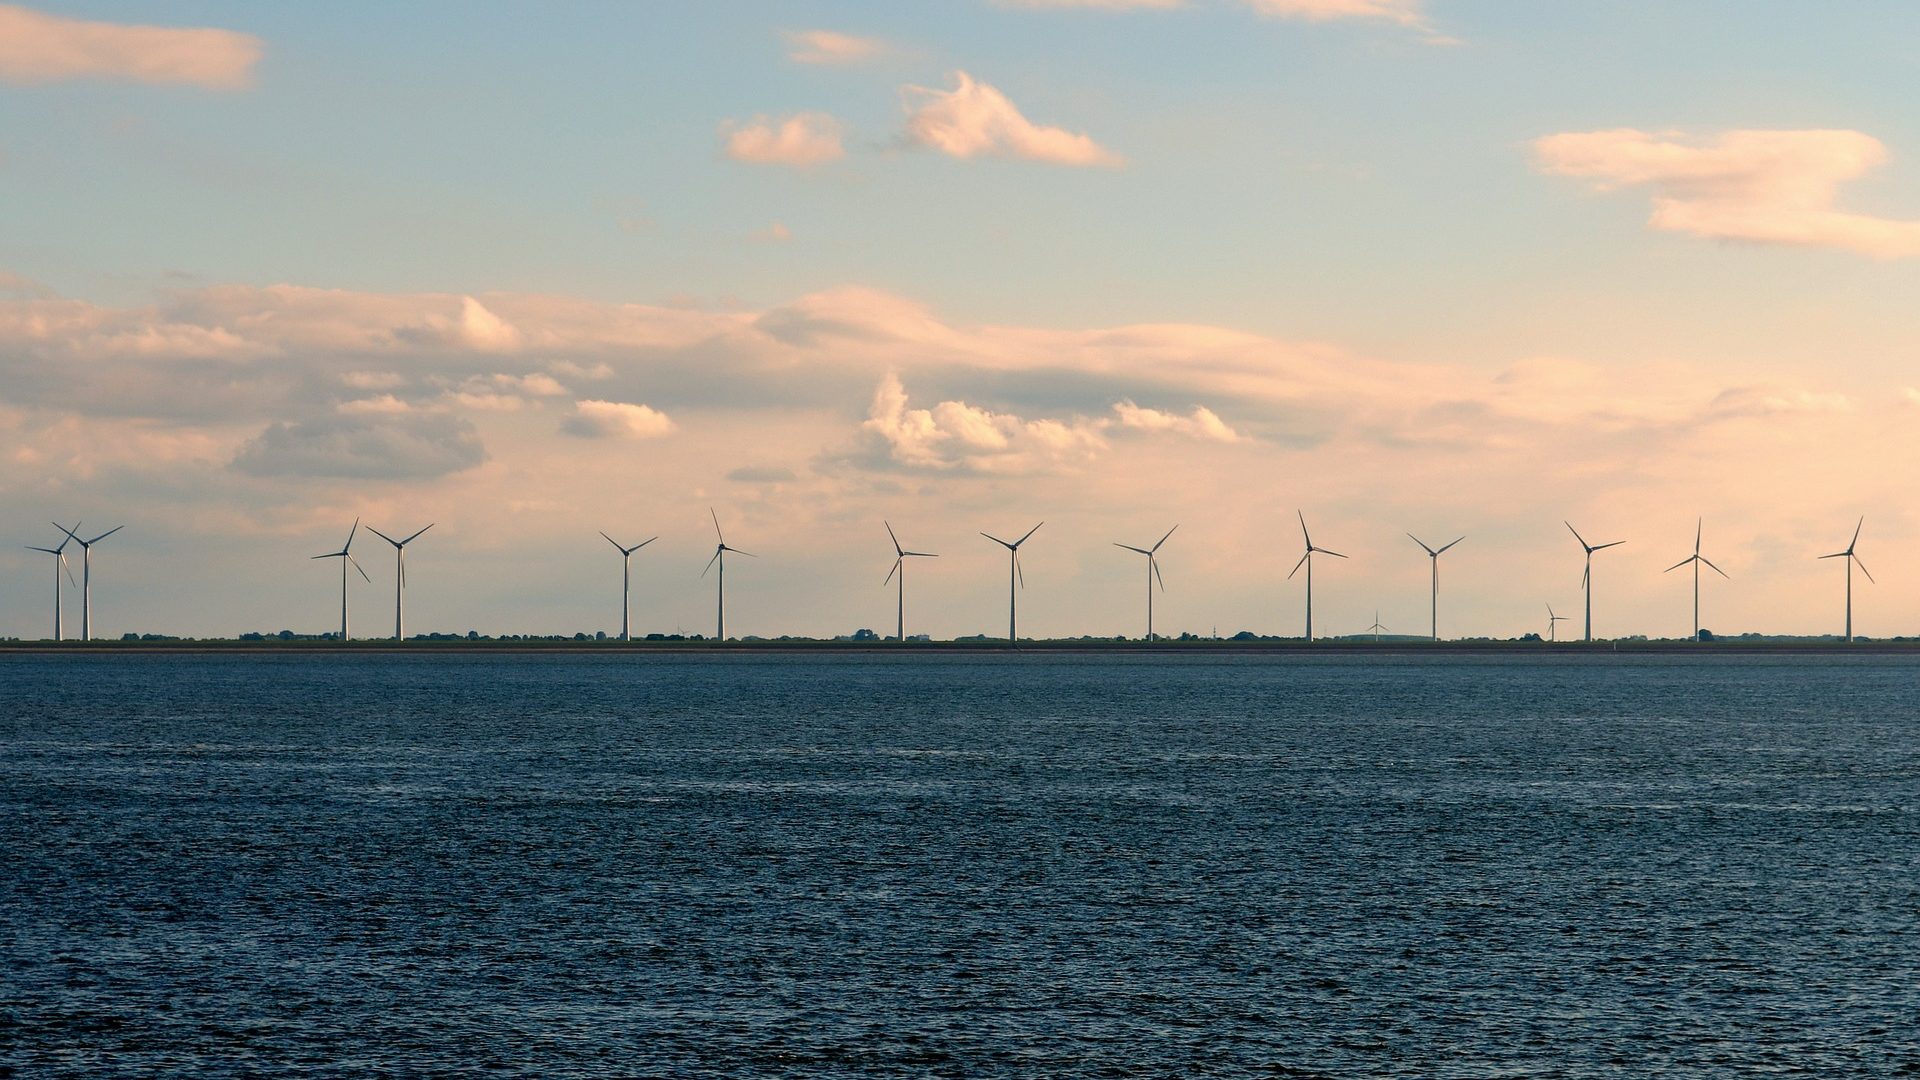 Mar de Minas: Cemig licencia eólica offshore de 1,5 GW. Na imagem: Turbinas eólicas em alto mar para geração offshore (Foto: Elke/Pixabay)